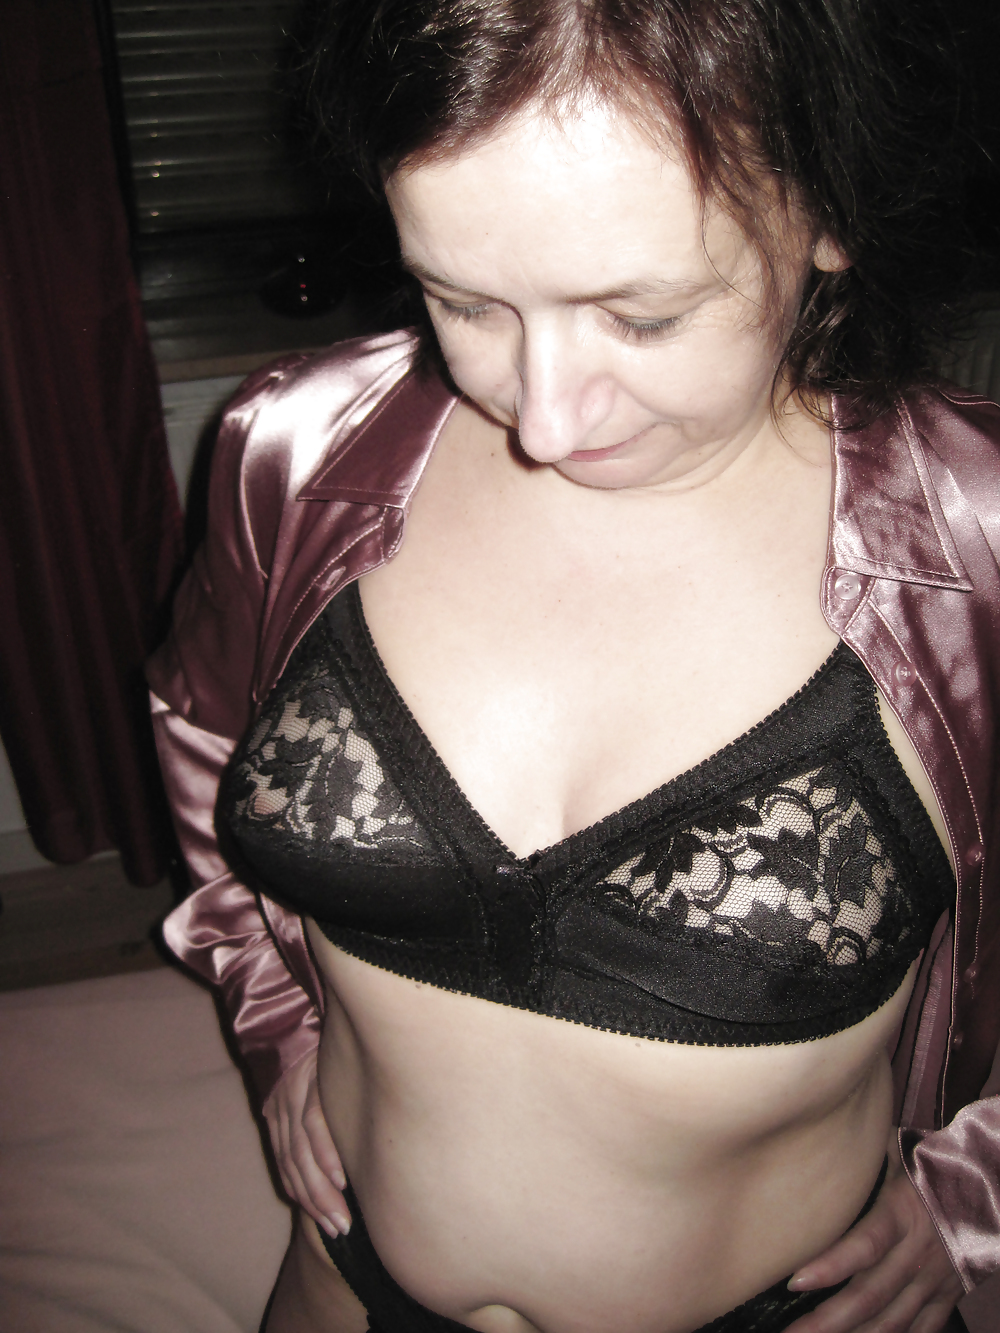 MILF in black lingerie, retro bra, garterbelt, hairy bush #22478181